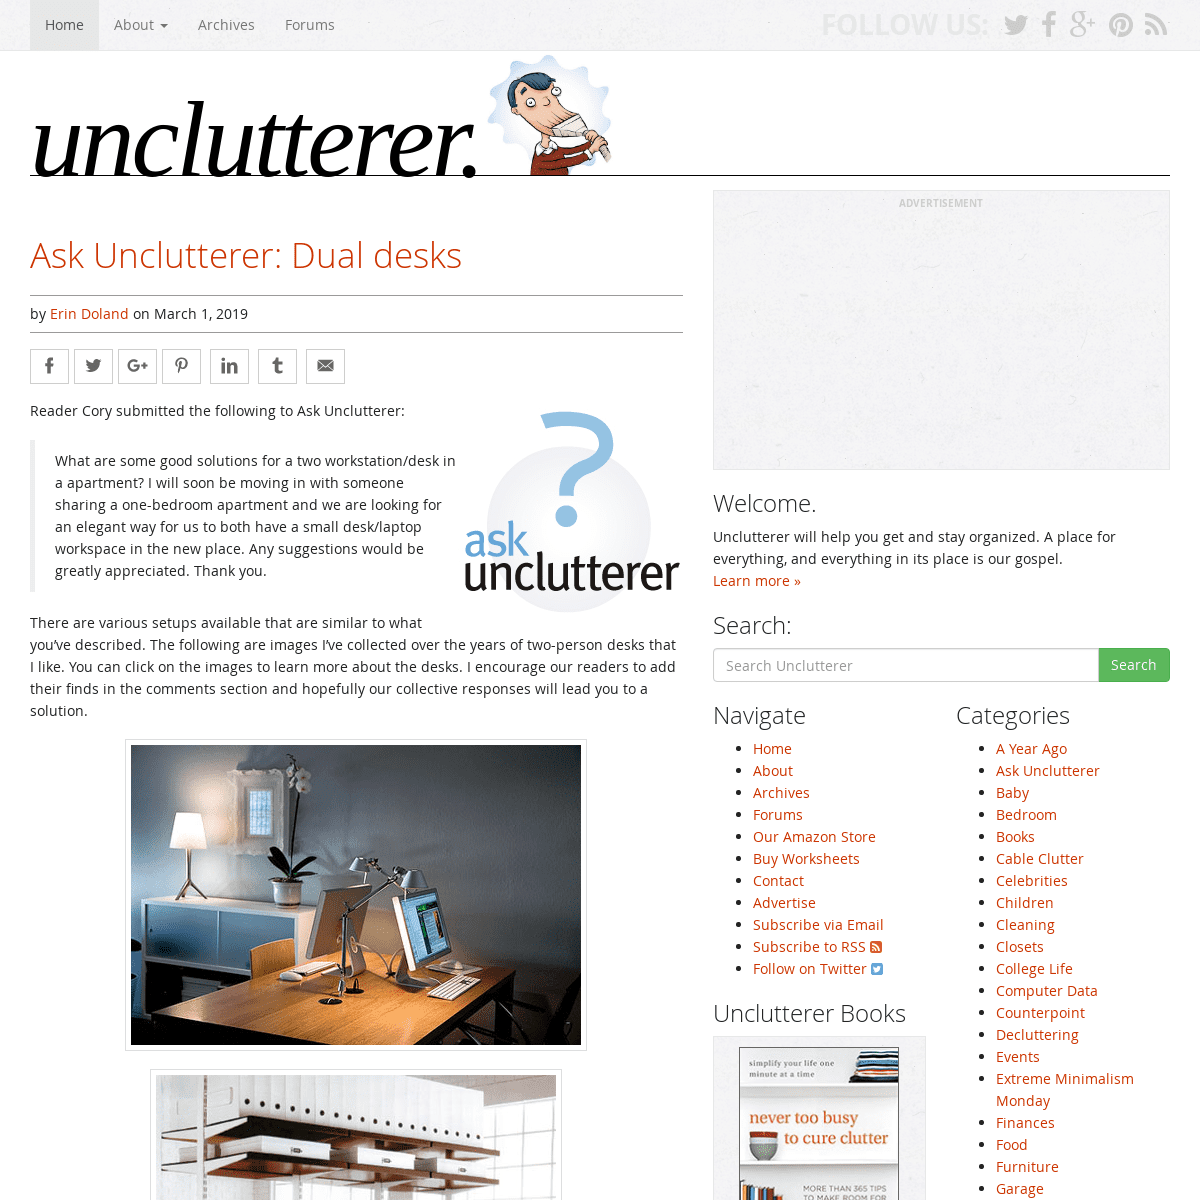 A complete backup of unclutterer.com